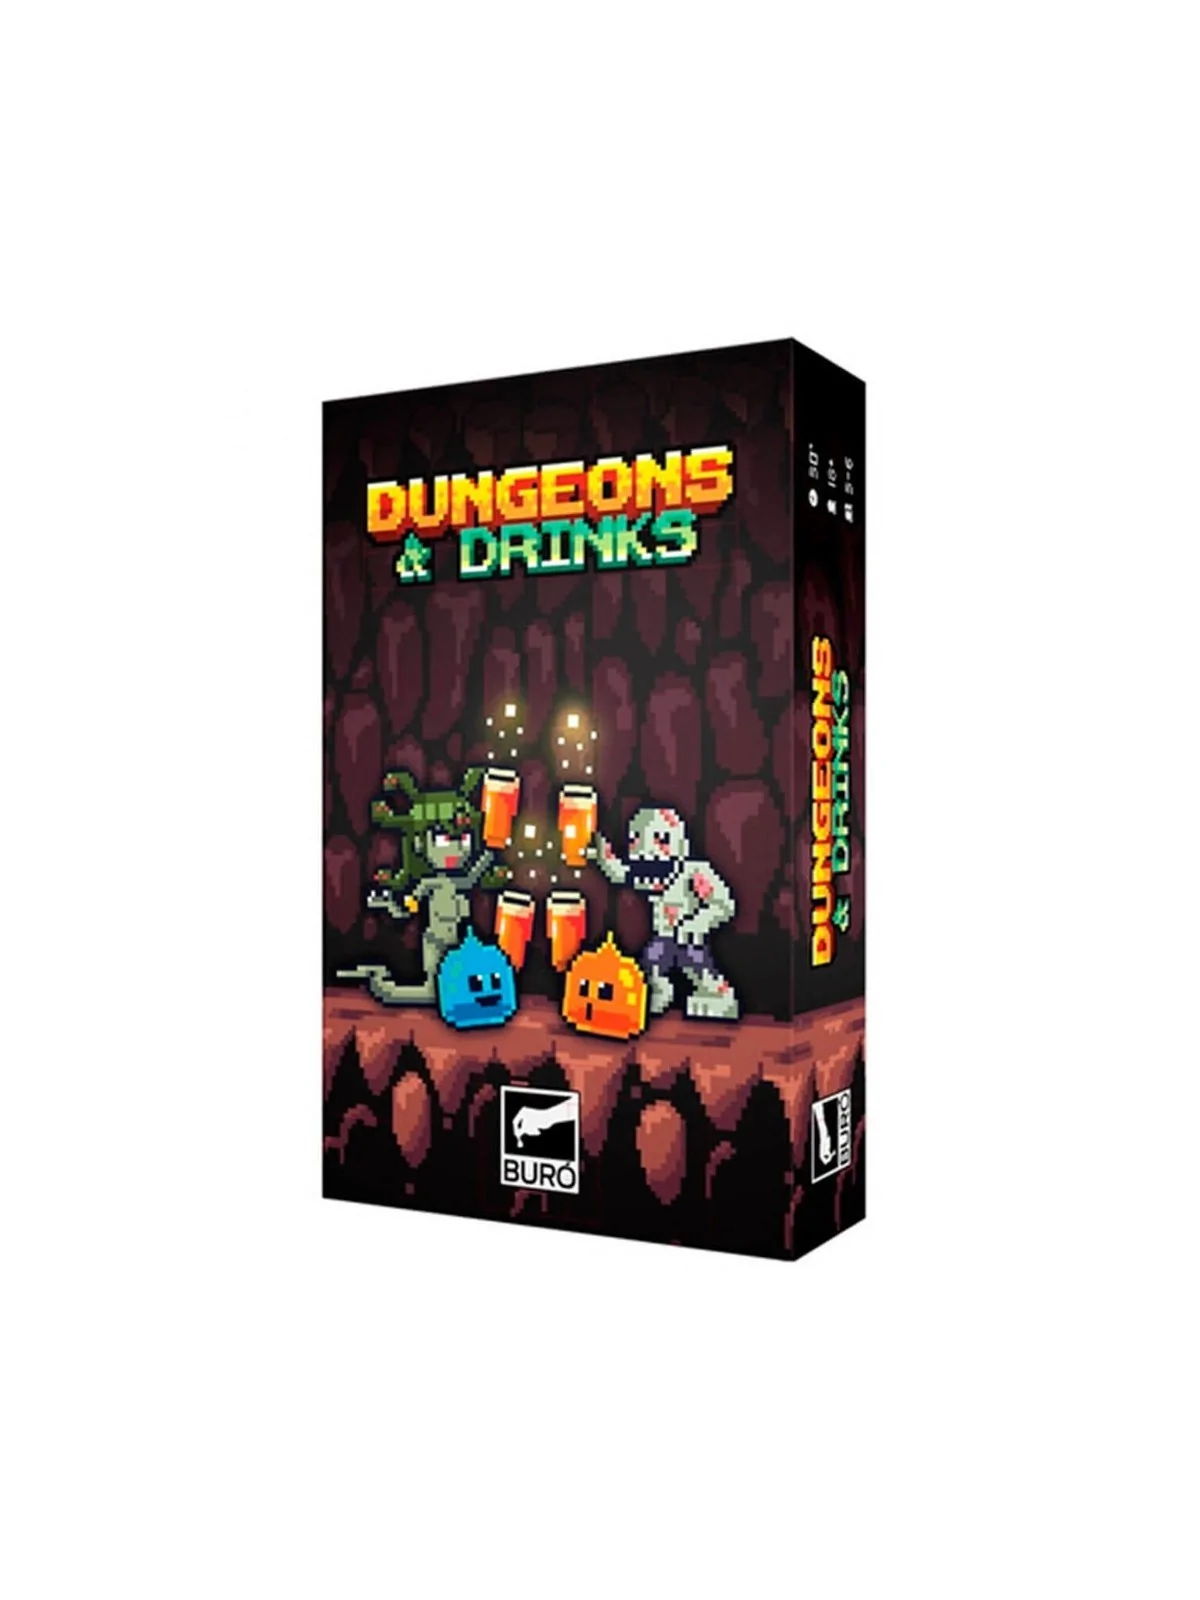 Comprar Dungeons & Drinks barato al mejor precio 17,99 € de Buro de Ju